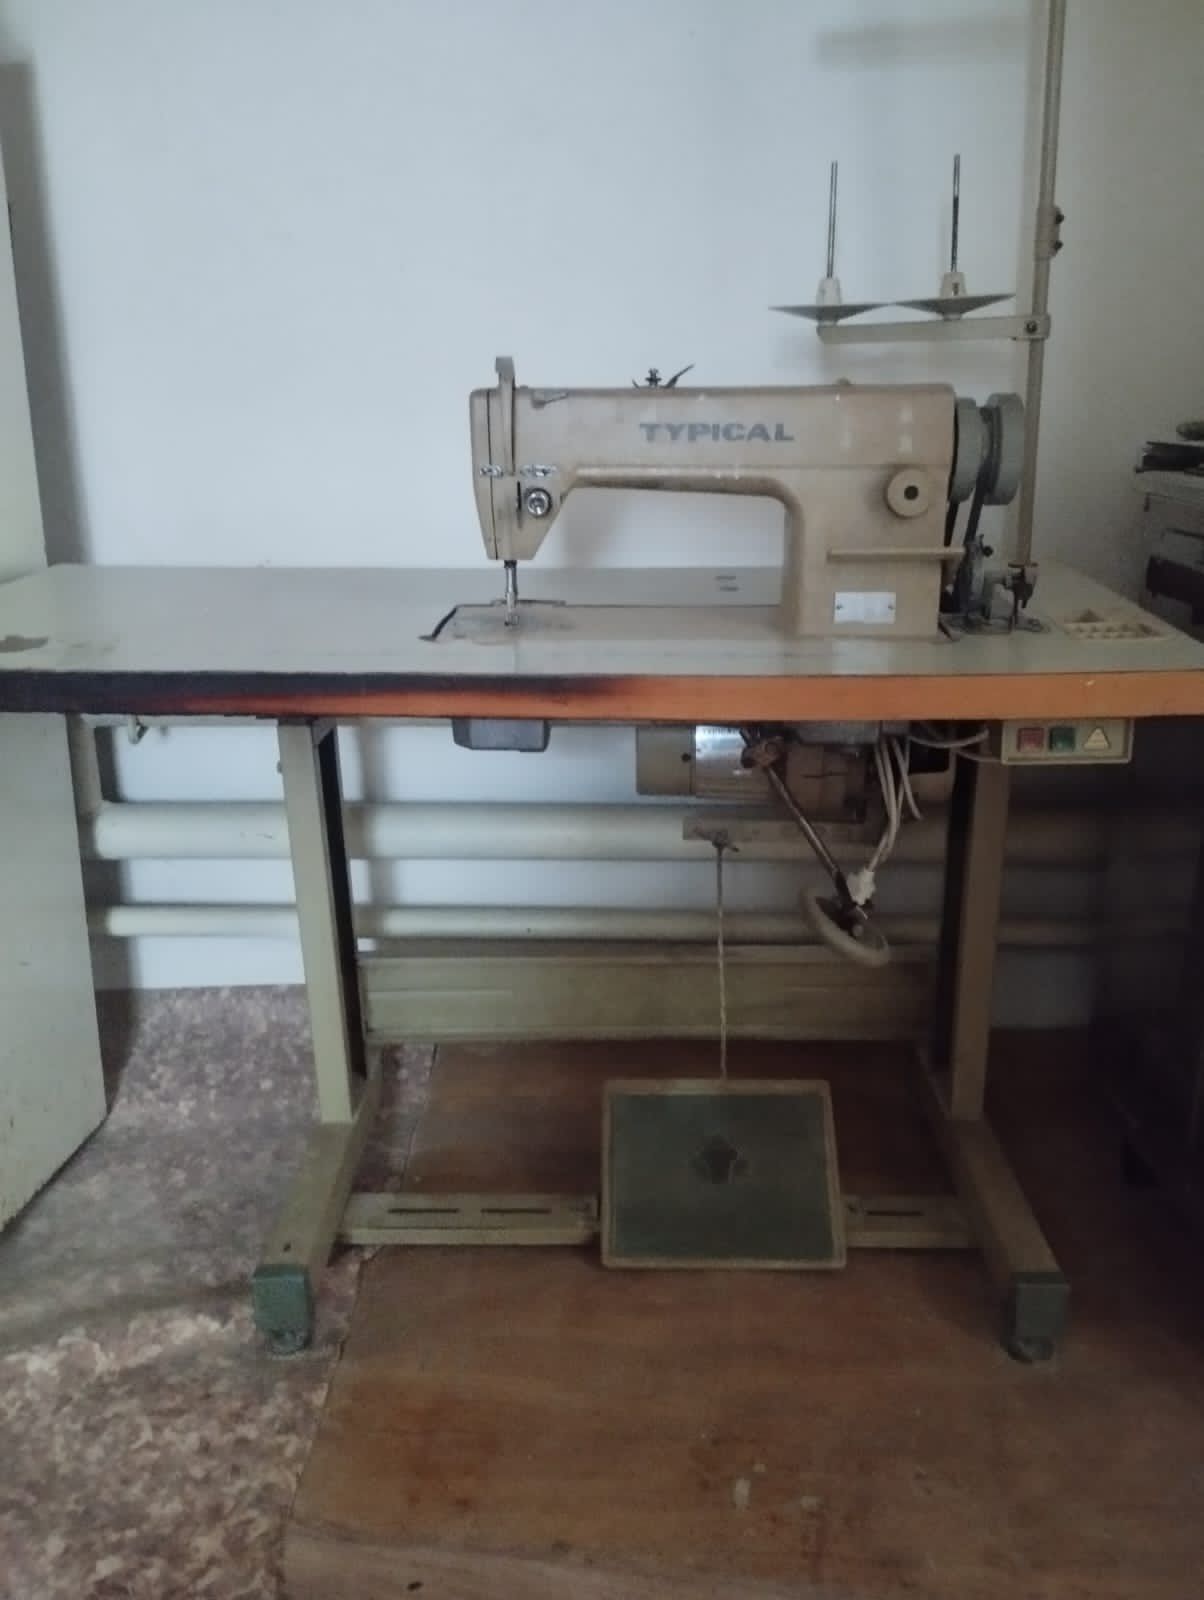 Промышленная швейная машина Typical